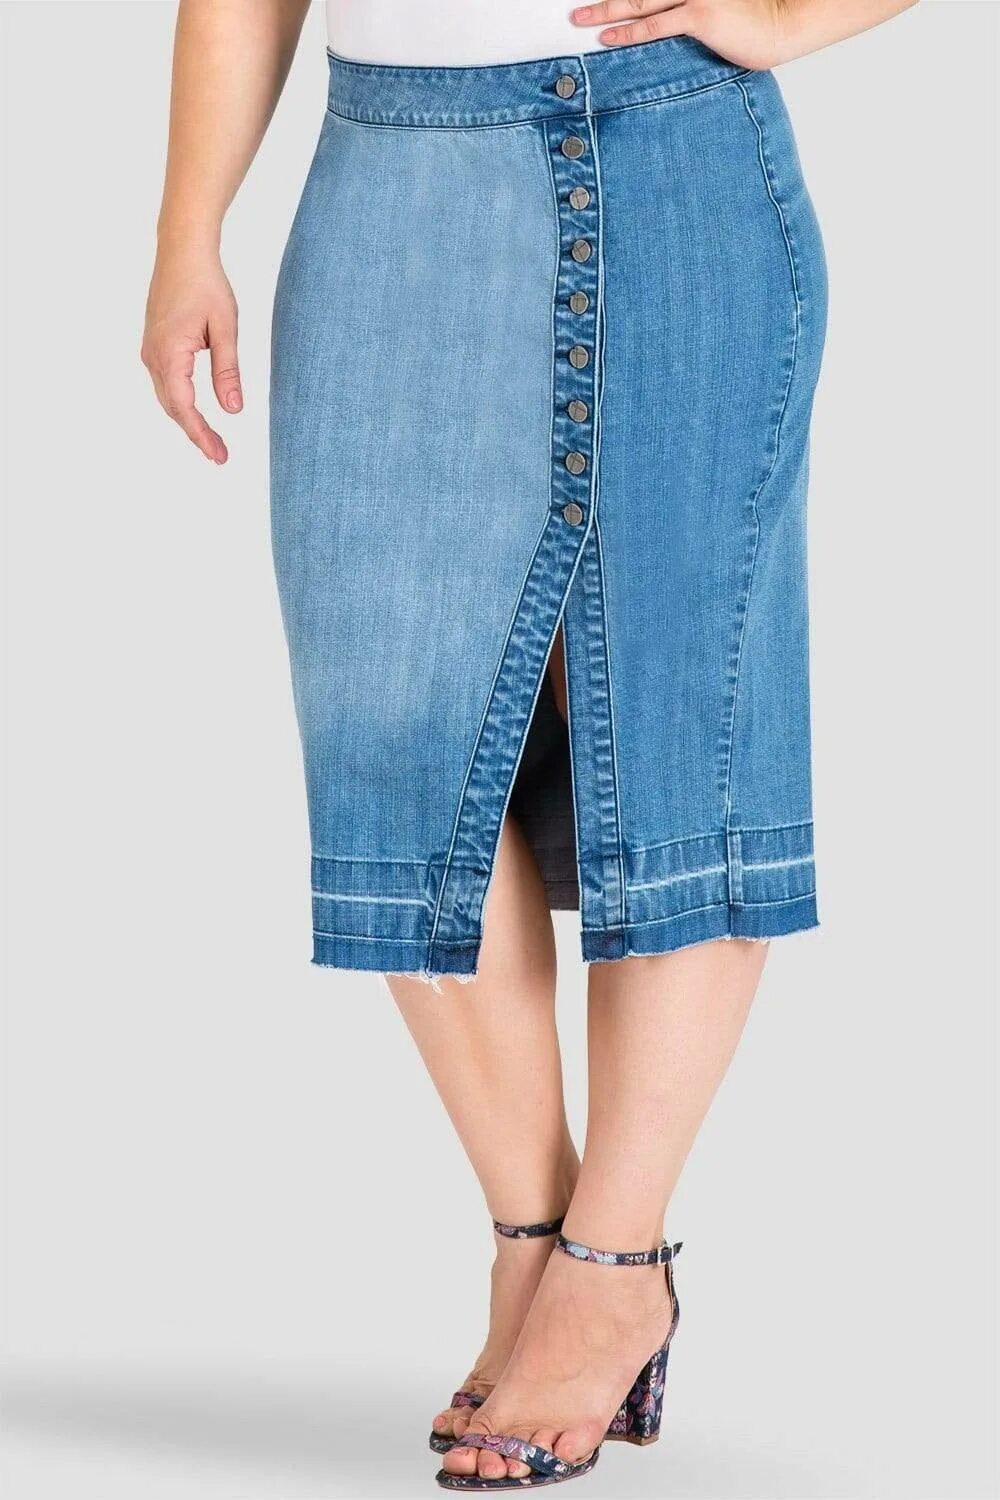 Купить юбку джинсовую большого размера. Юбка джинсовая 2021 плюс сайз. Юбка джинсовая макси плюс сайз. Джинсовая юбка миди плюс сайз. Остин джинсовая юбка миди.